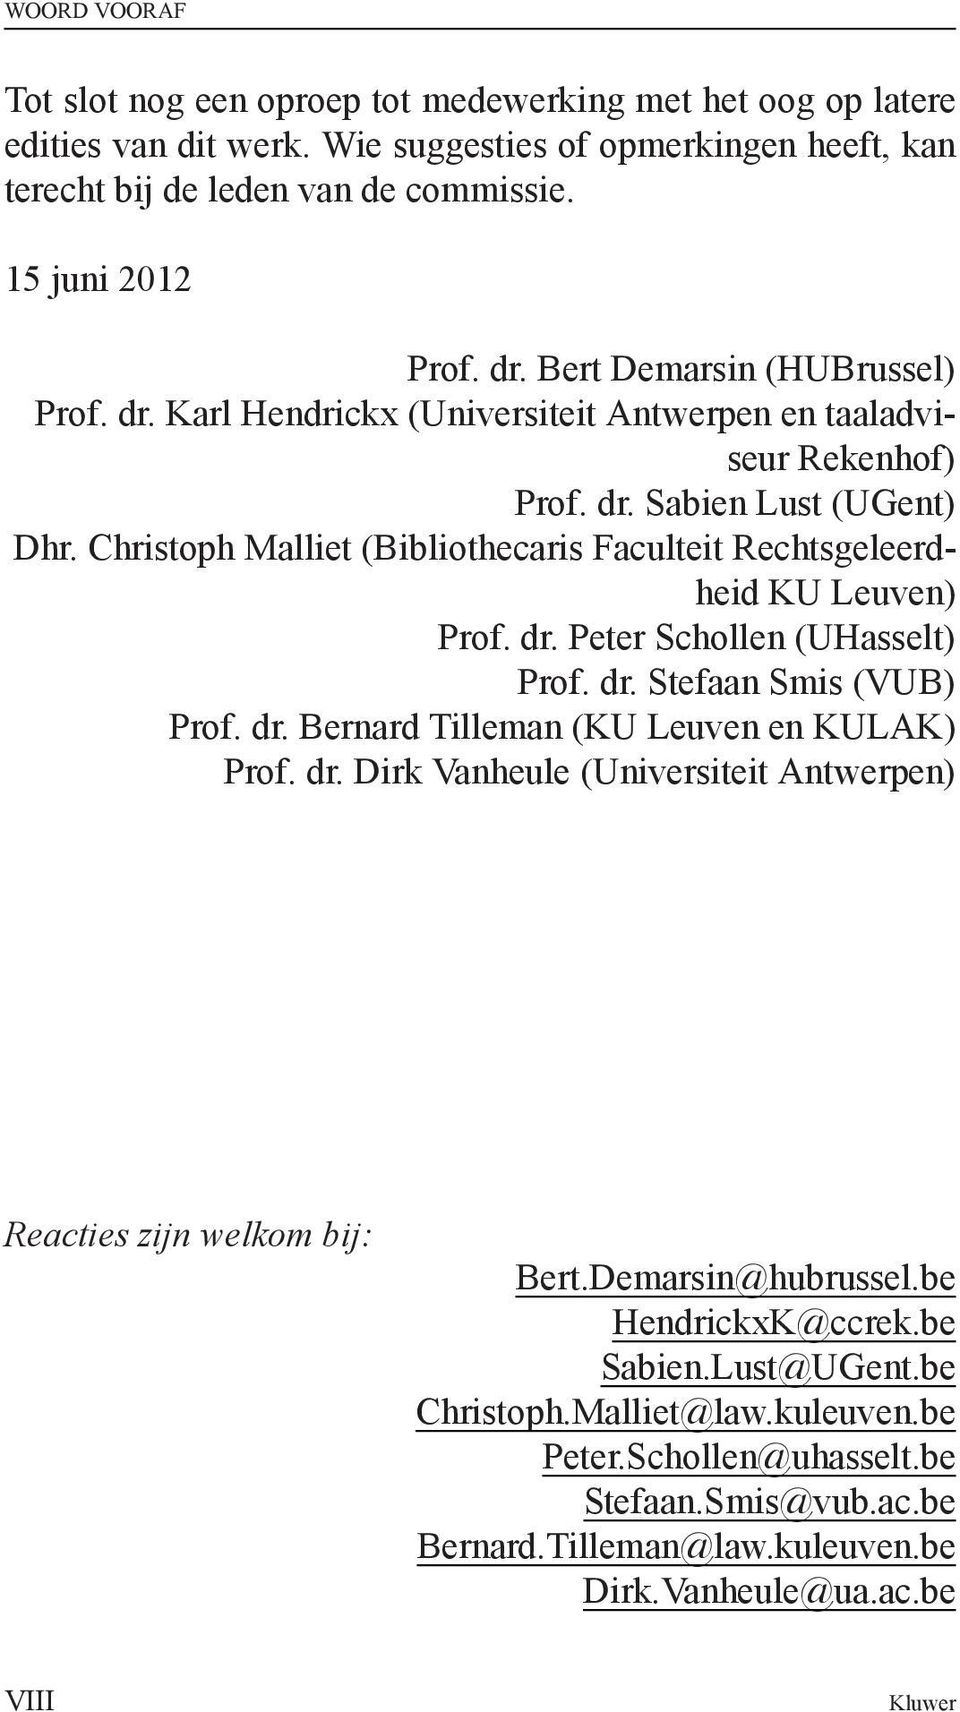 Christoph Malliet (Bibliothecaris Faculteit Rechtsgeleerdheid KU Leuven) Prof. dr. Peter Schollen (UHasselt) Prof. dr. Stefaan Smis (VUB) Prof. dr. Bernard Tilleman (KU Leuven en KULAK) Prof. dr. Dirk Vanheule (Universiteit Antwerpen) Reacties zijn welkom bij: Bert.